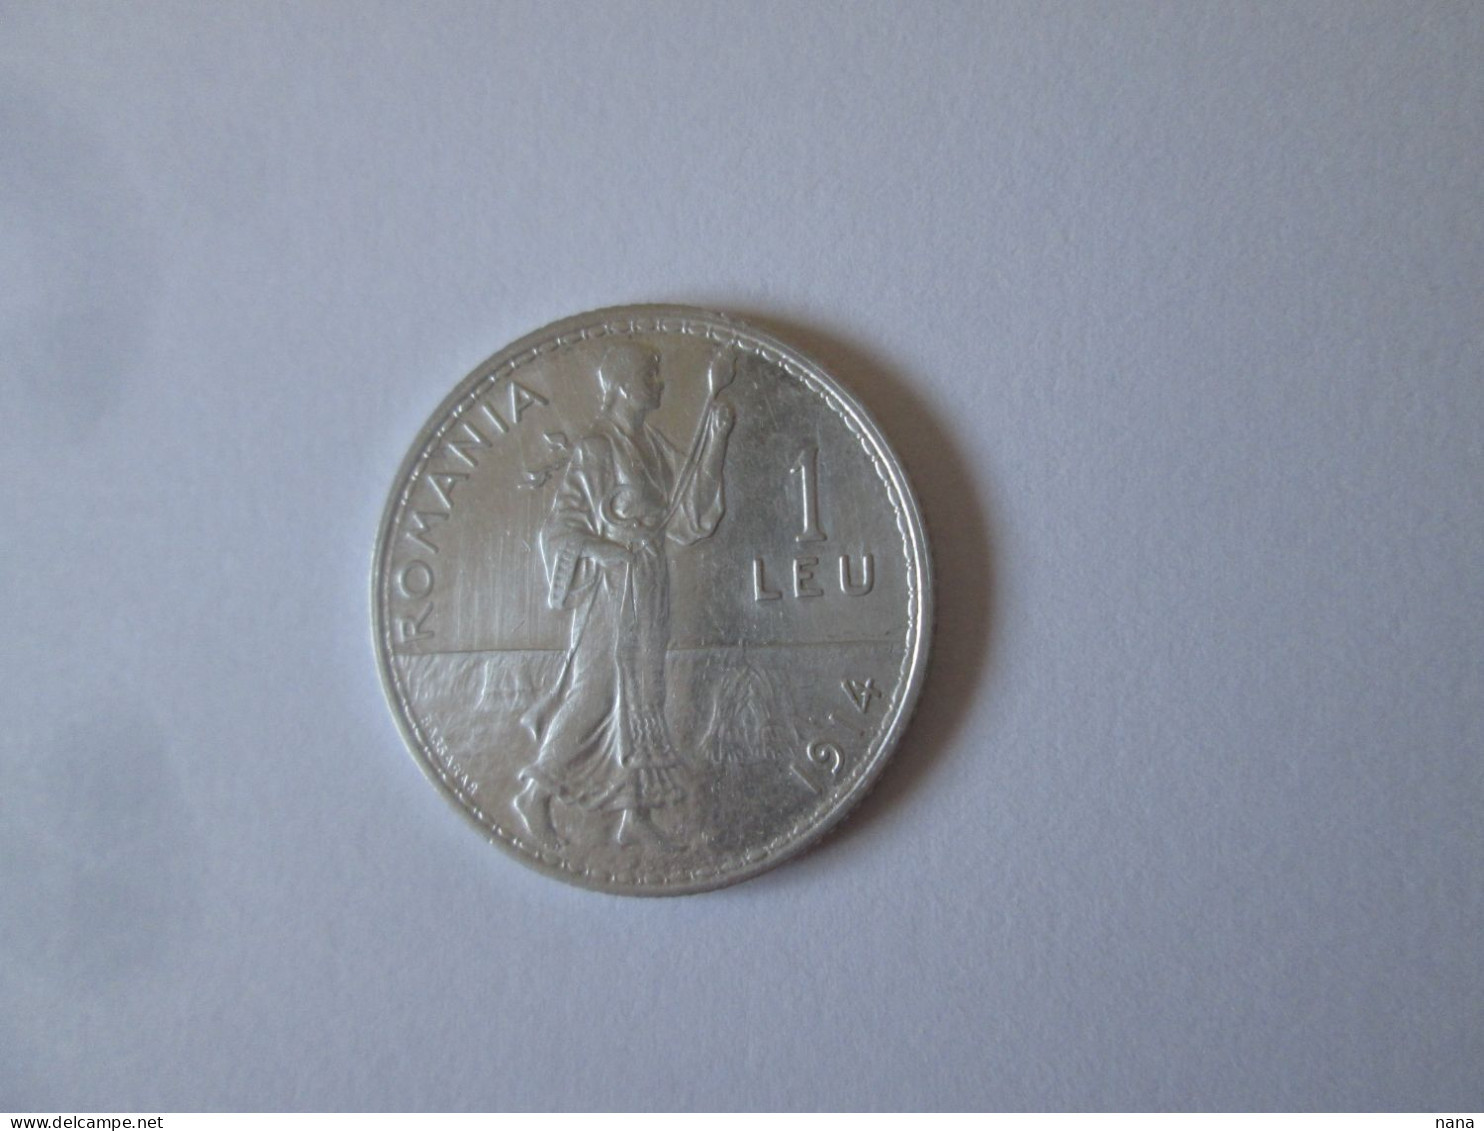 Roumanie 1 Leu 1914 Argent Tres Belle Piece/Romania 1 Leu 1914 Silver Very Nice Coin - Rumänien